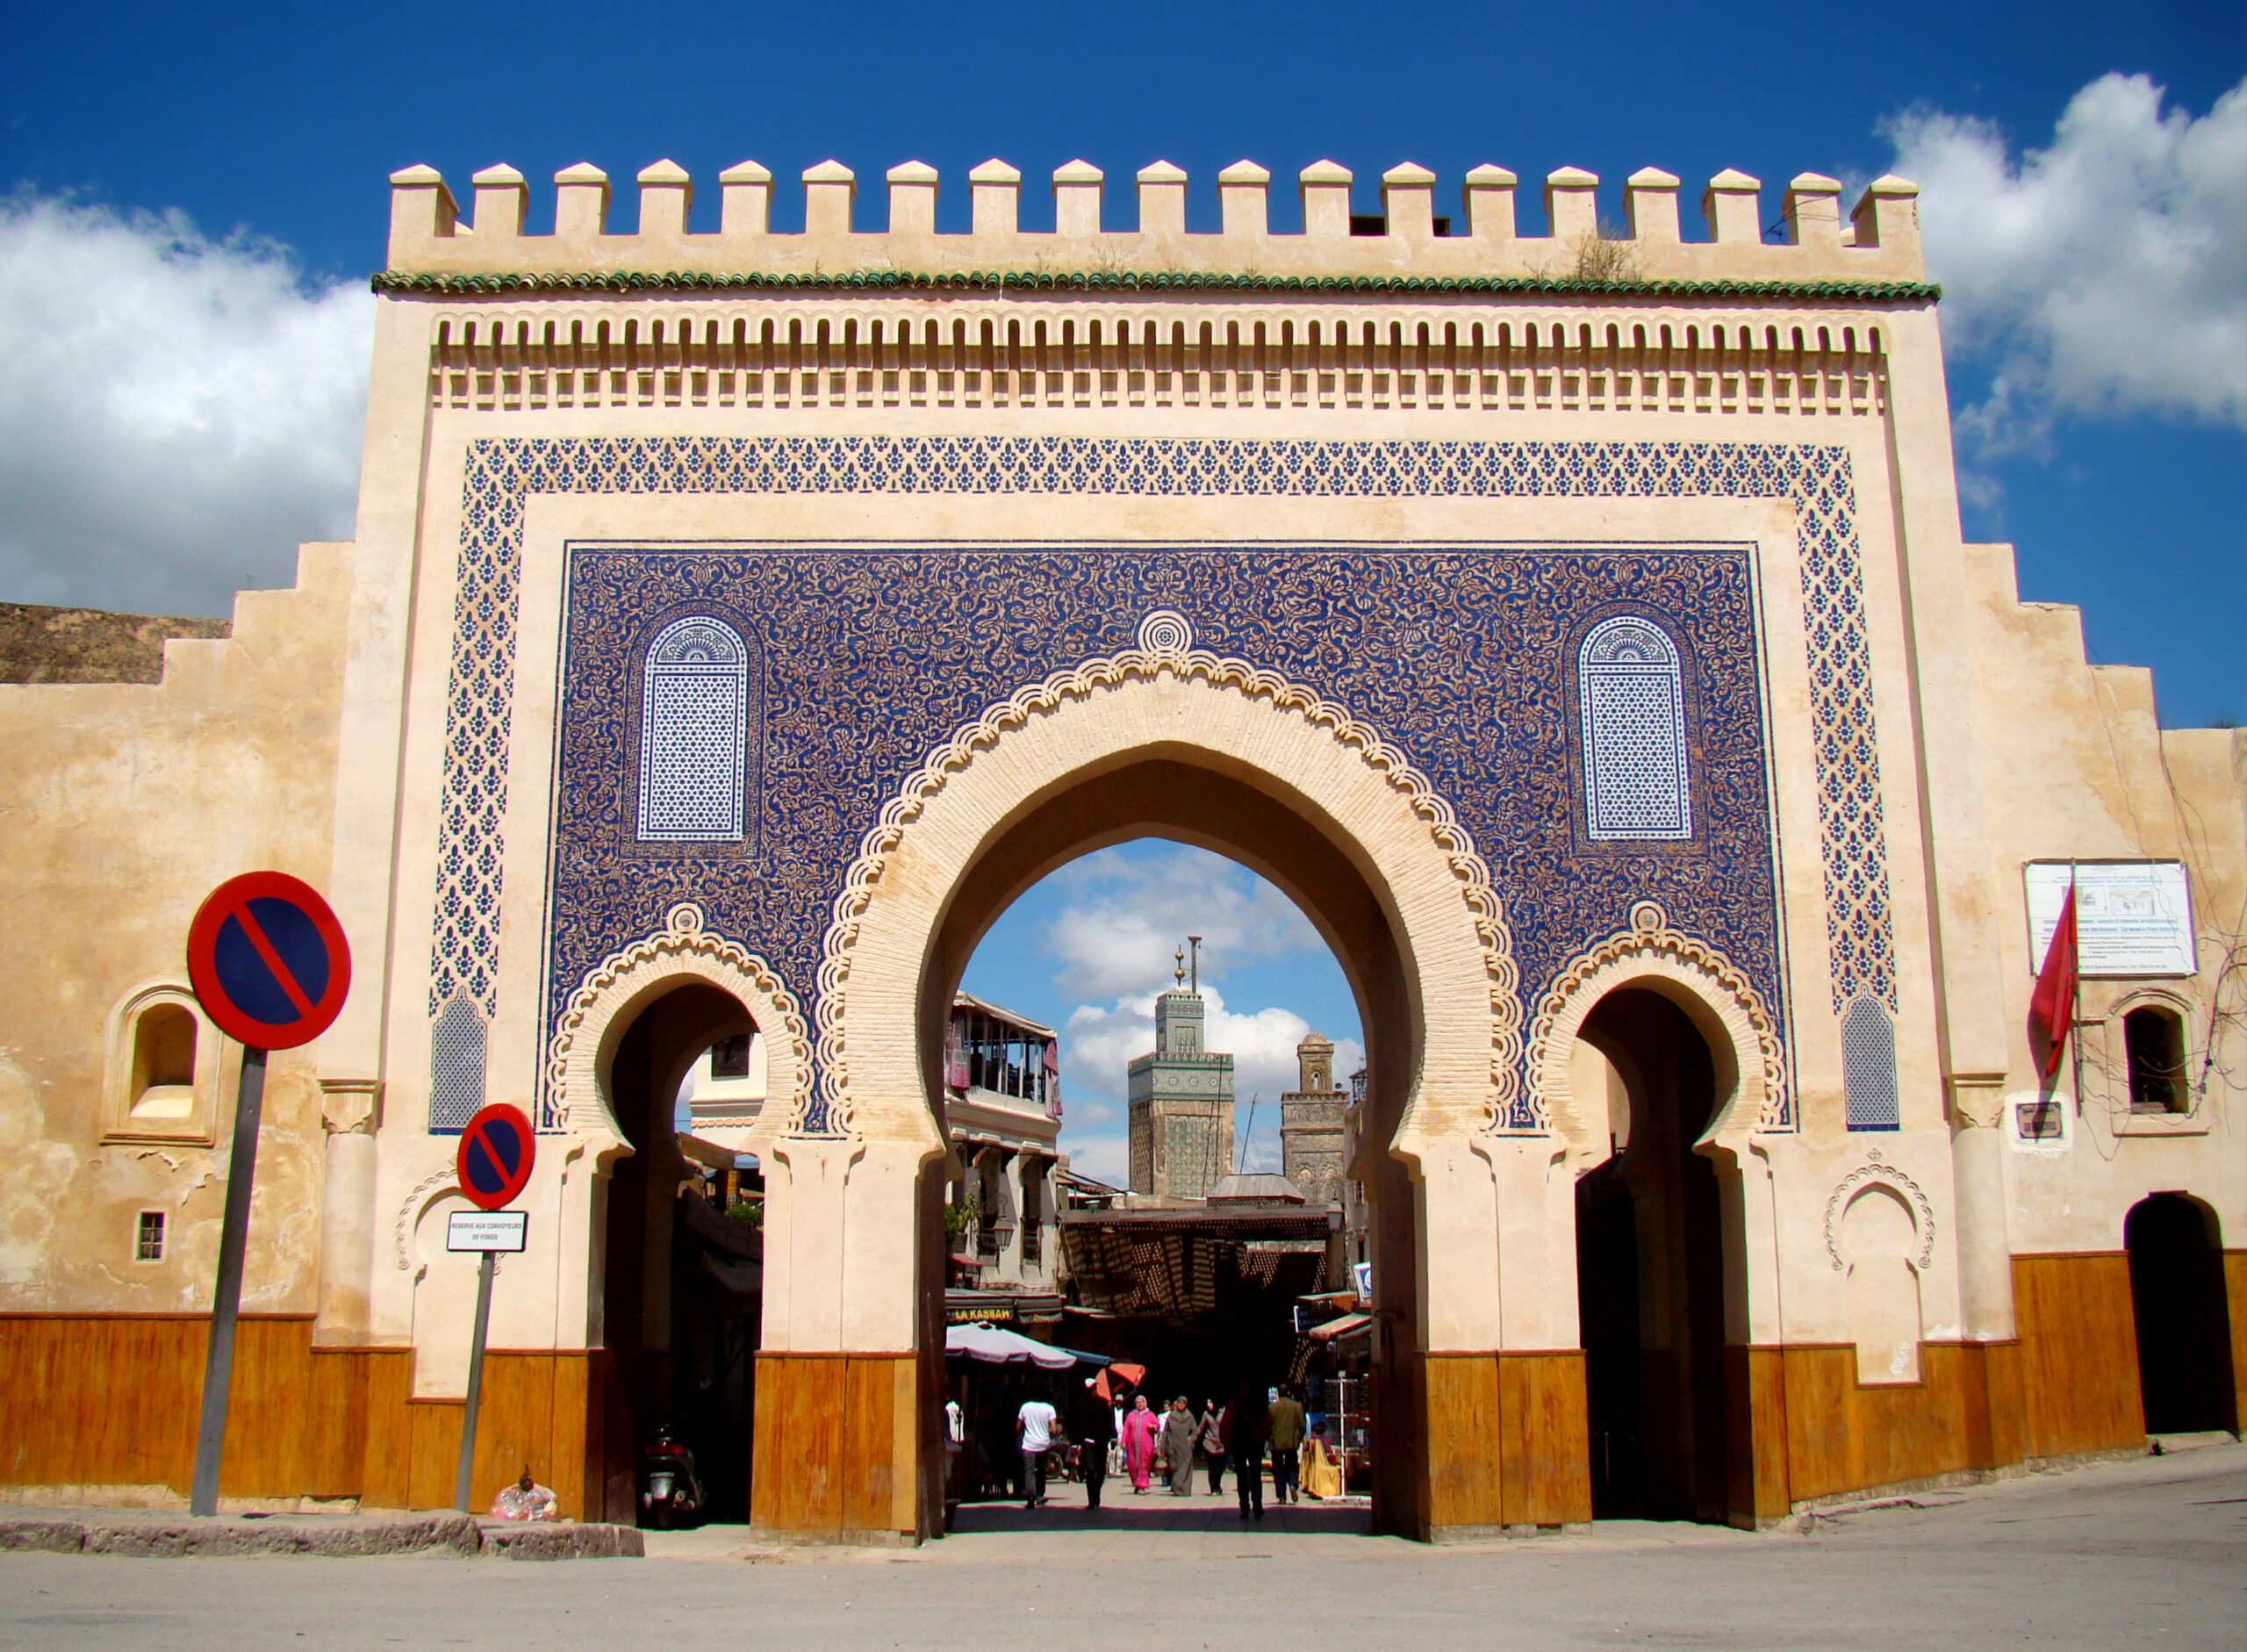 La Fondation Journée de Fez rend hommage à l’histoire millénaire de Fez